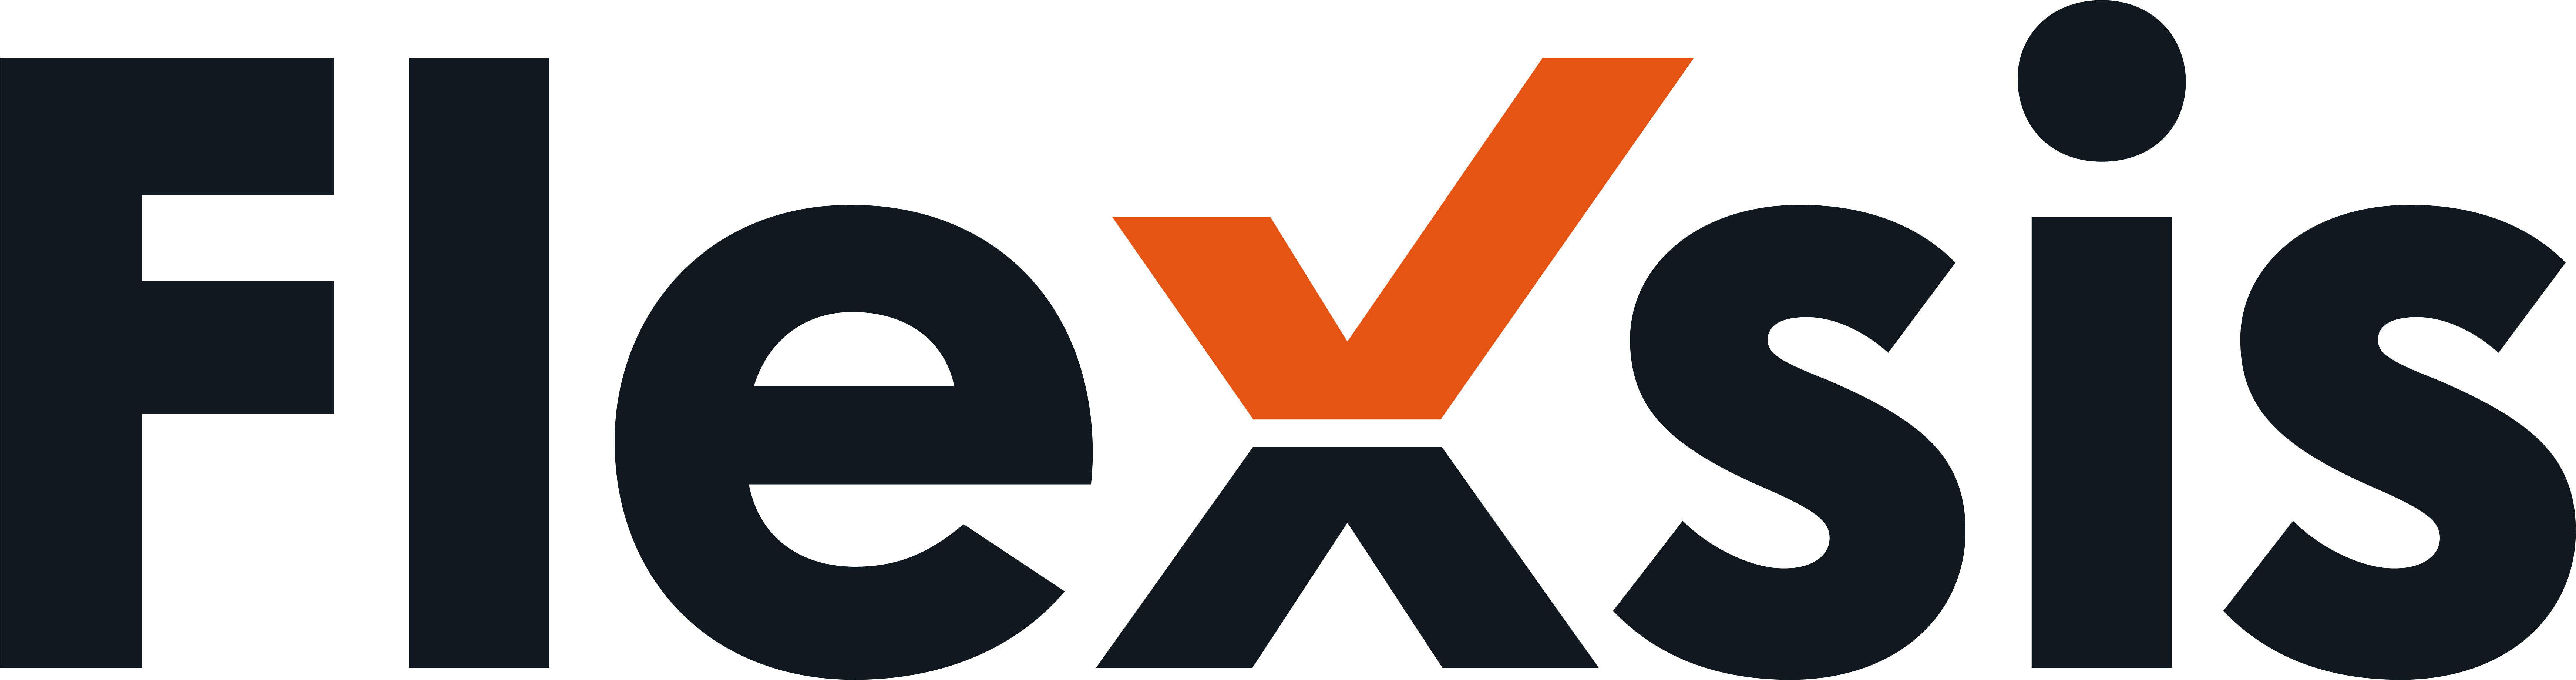 Flexis logo